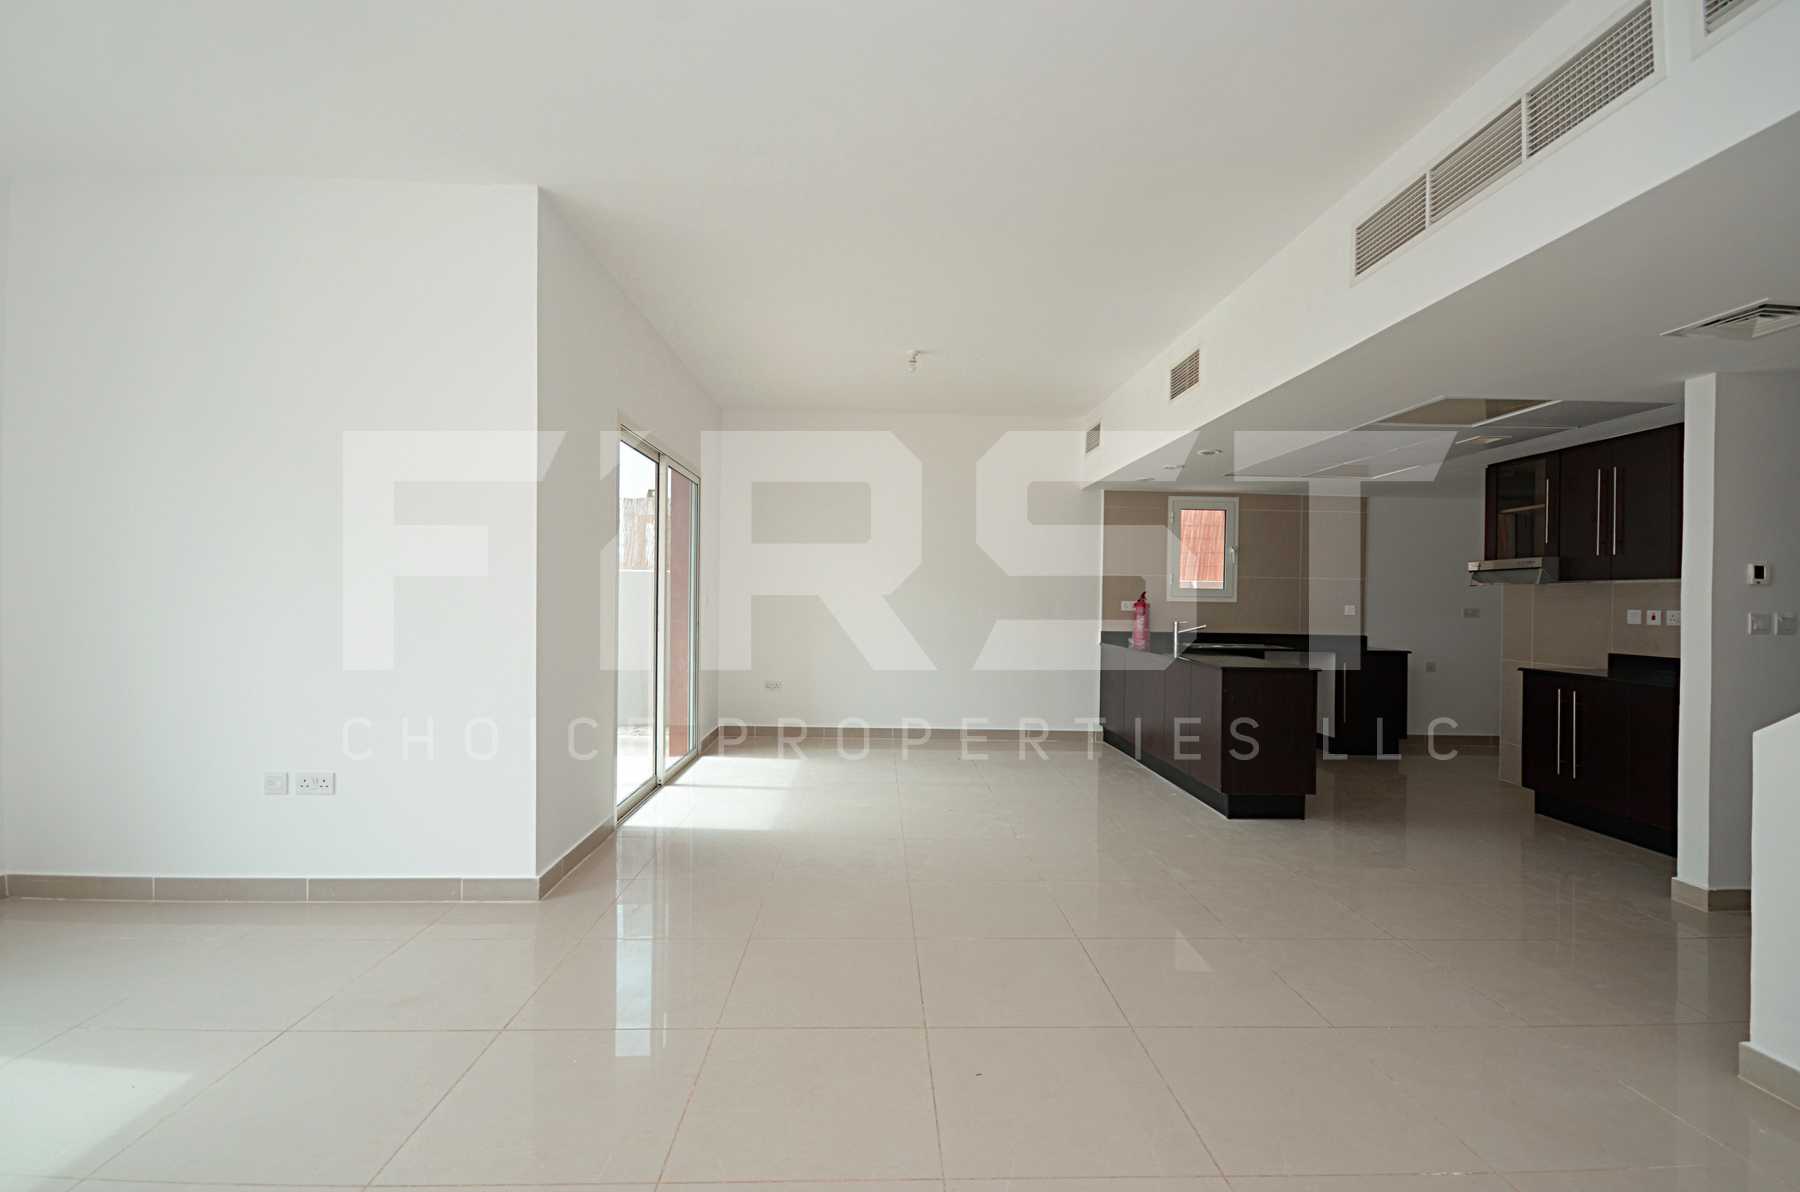 Internal Photo of 4 Bedroom Villa in Al Reef Villas Al Reef Abu Dhabi UAE 265.5 sq.m 2858 sq.ft (47).jpg